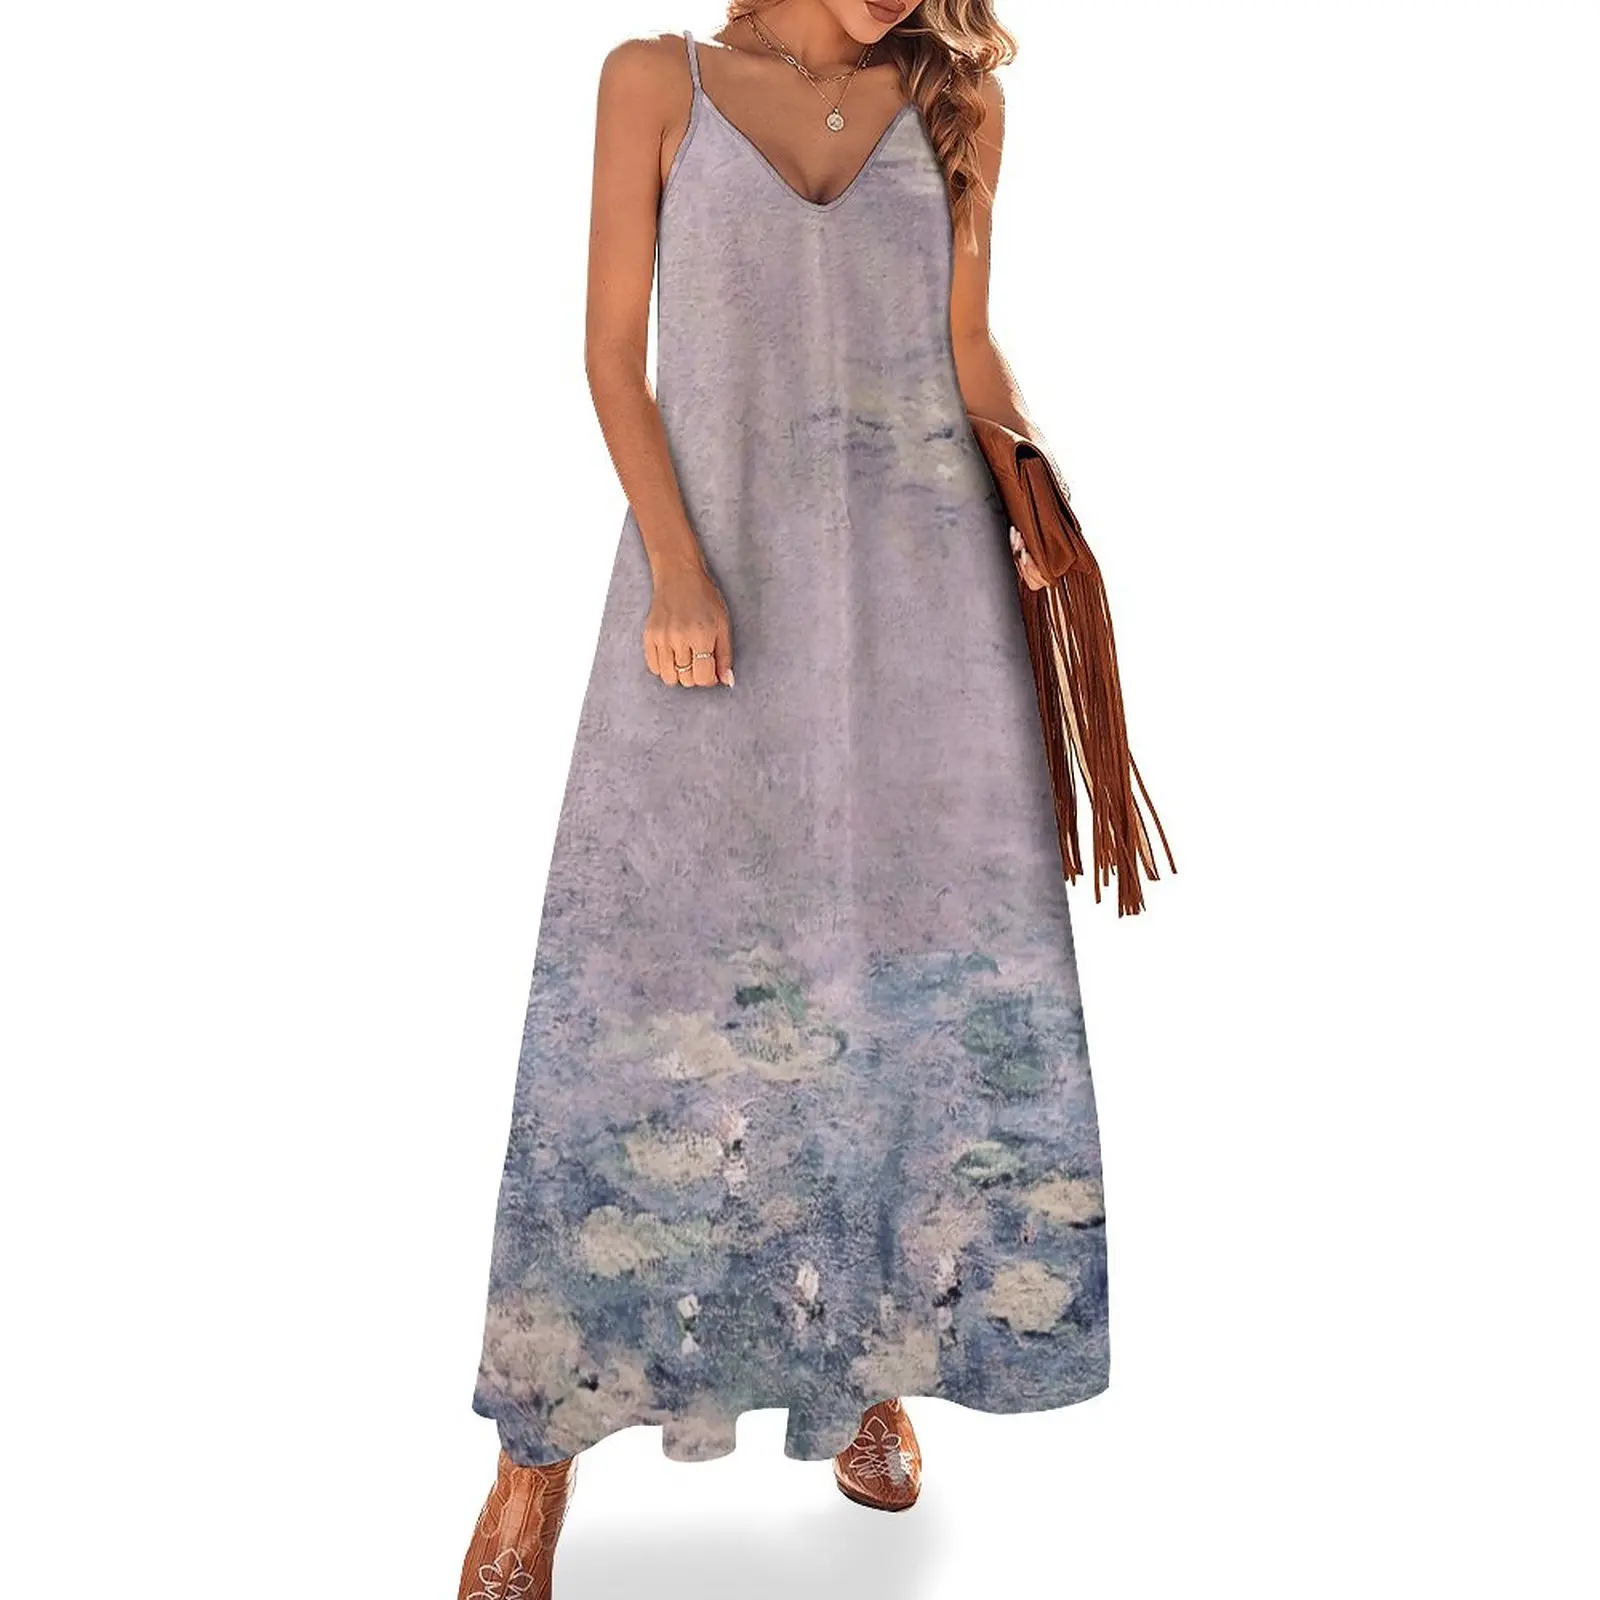 

Женское платье без рукавов Monet, Сиреневое платье без рукавов в виде водных лилий и пруда, нимфеи, фиолетовое платье